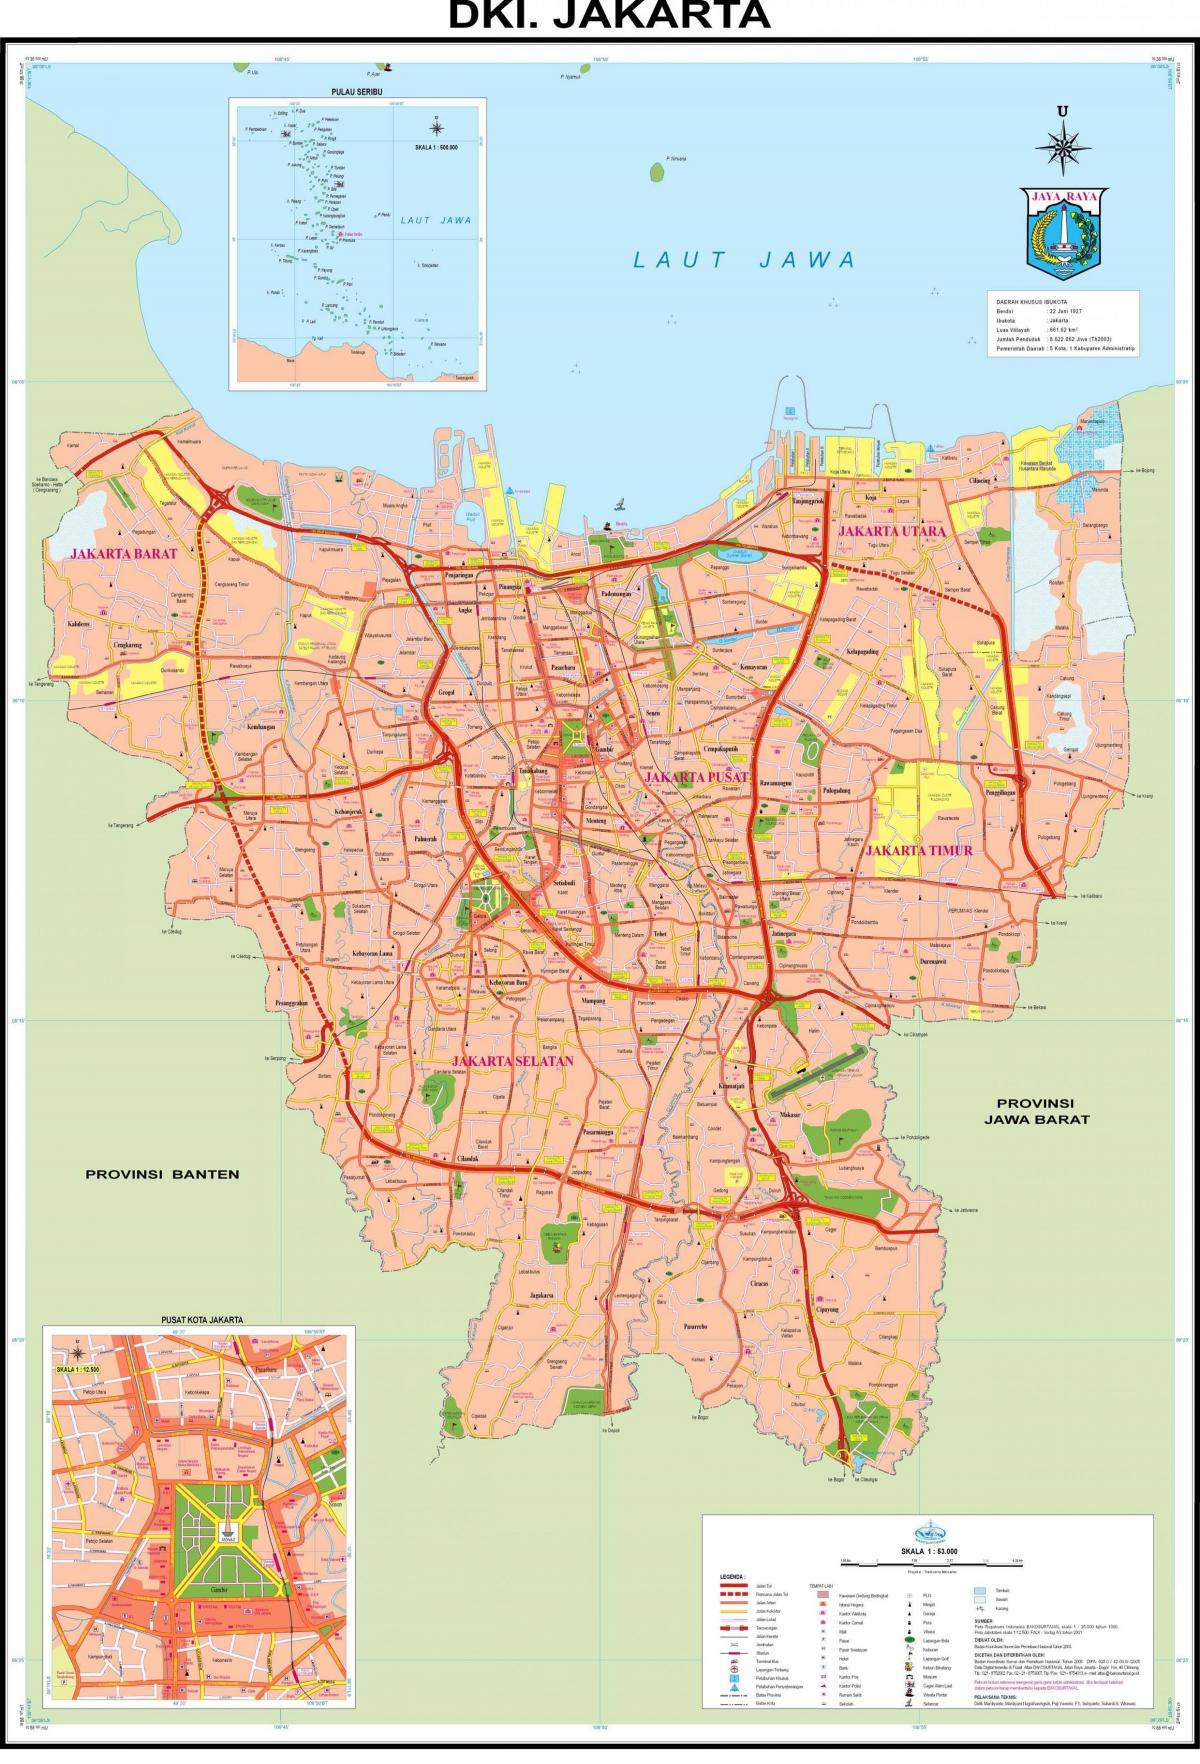 جکارتہ شہر کا نقشہ